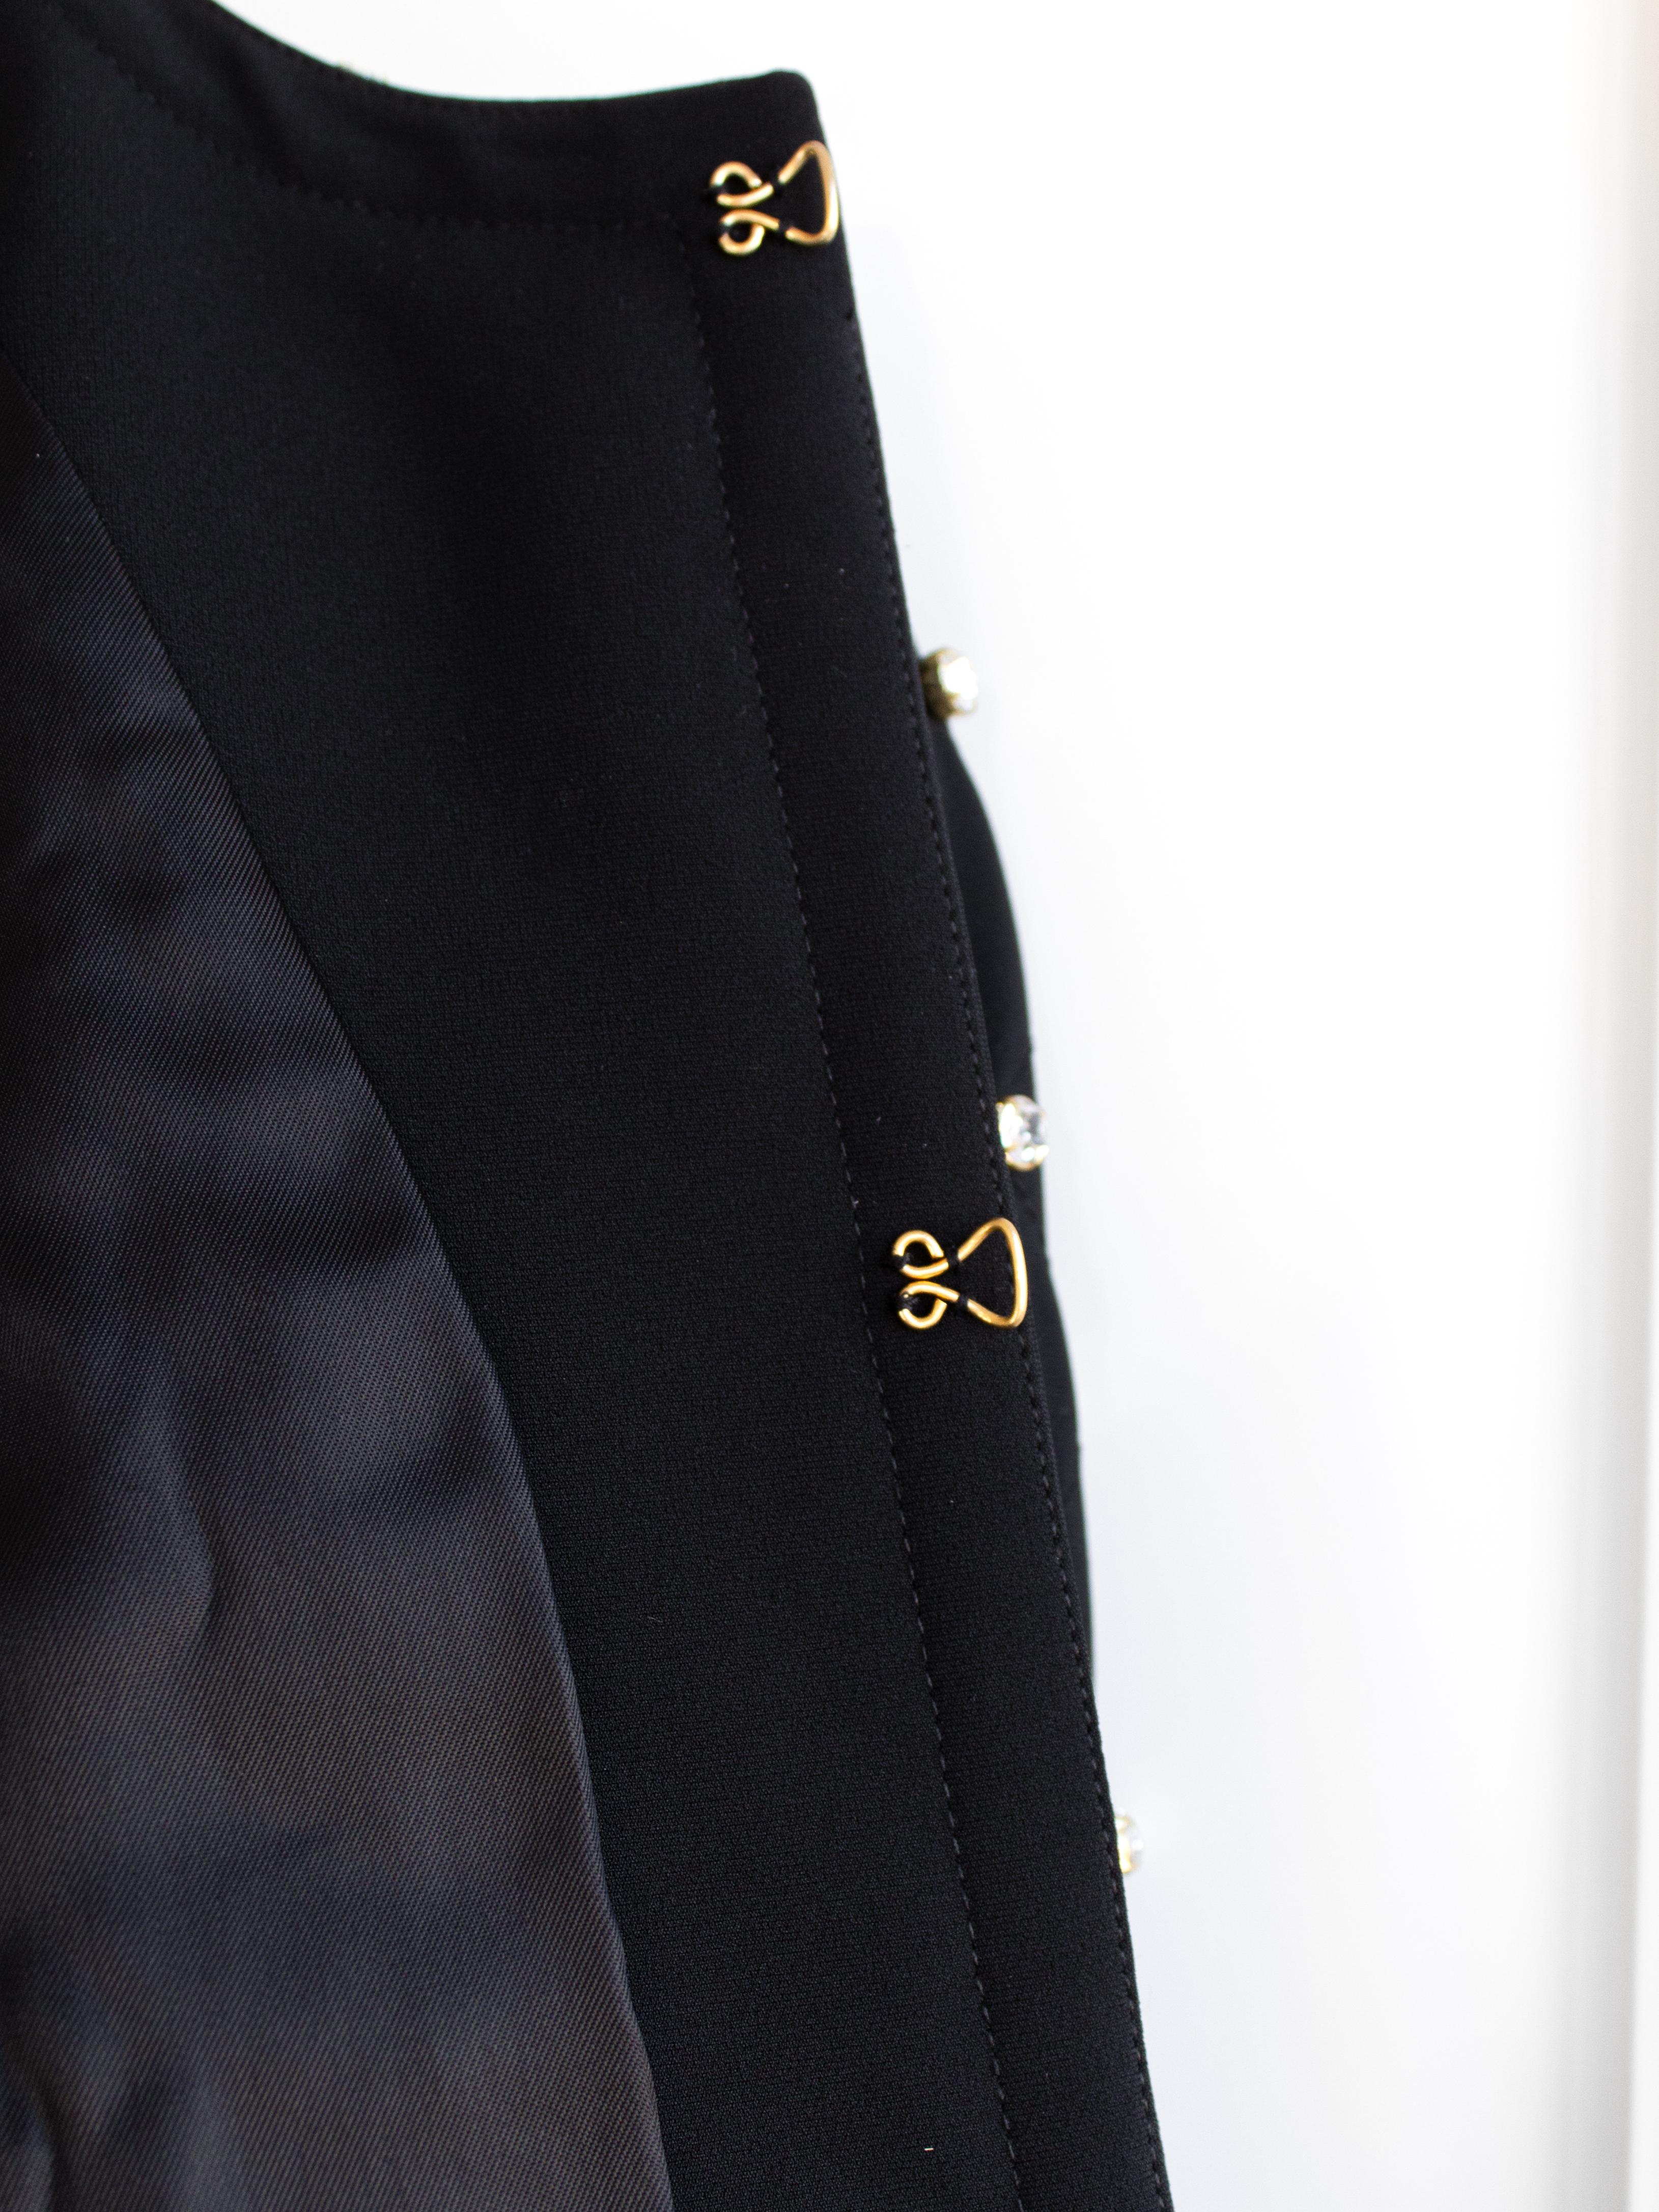 Moschino Couture S/S 2015 - Barbie - Veste noire ornée de strass et de cristaux en vente 11